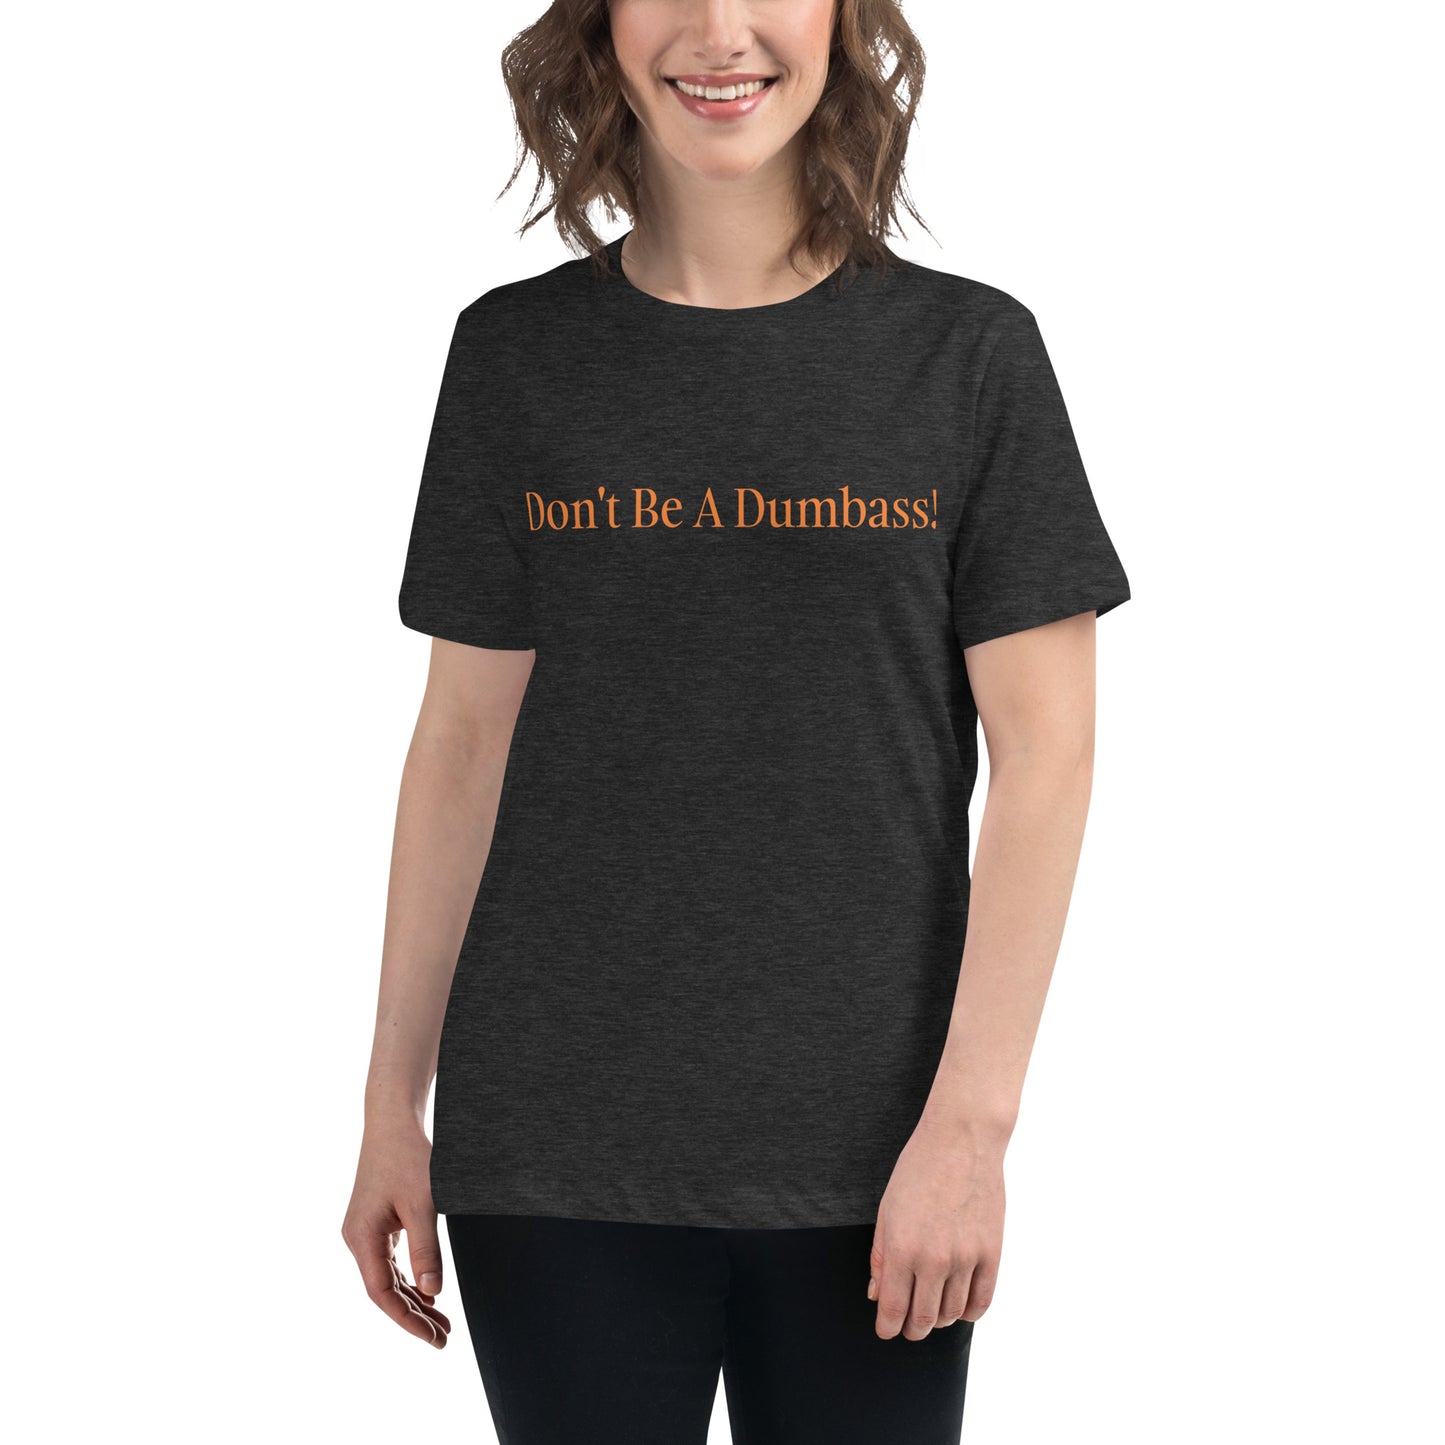 "Don't Be A Dumbass" T-Shirt